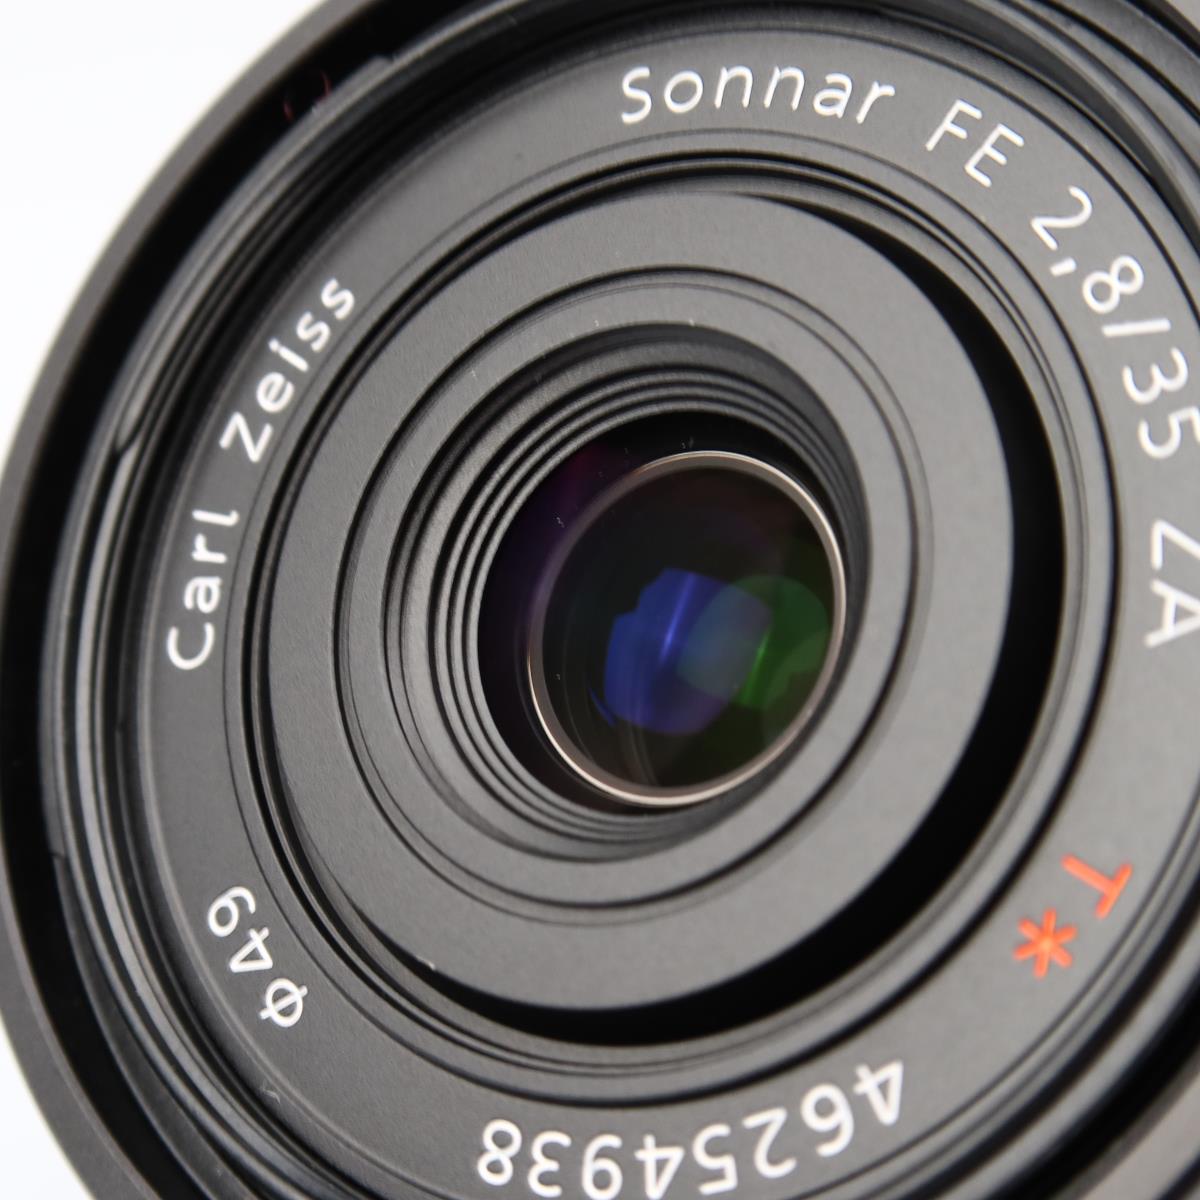 (Myyty) Sony Sonnar T* FE 35mm f/2.8 ZA (käytetty)